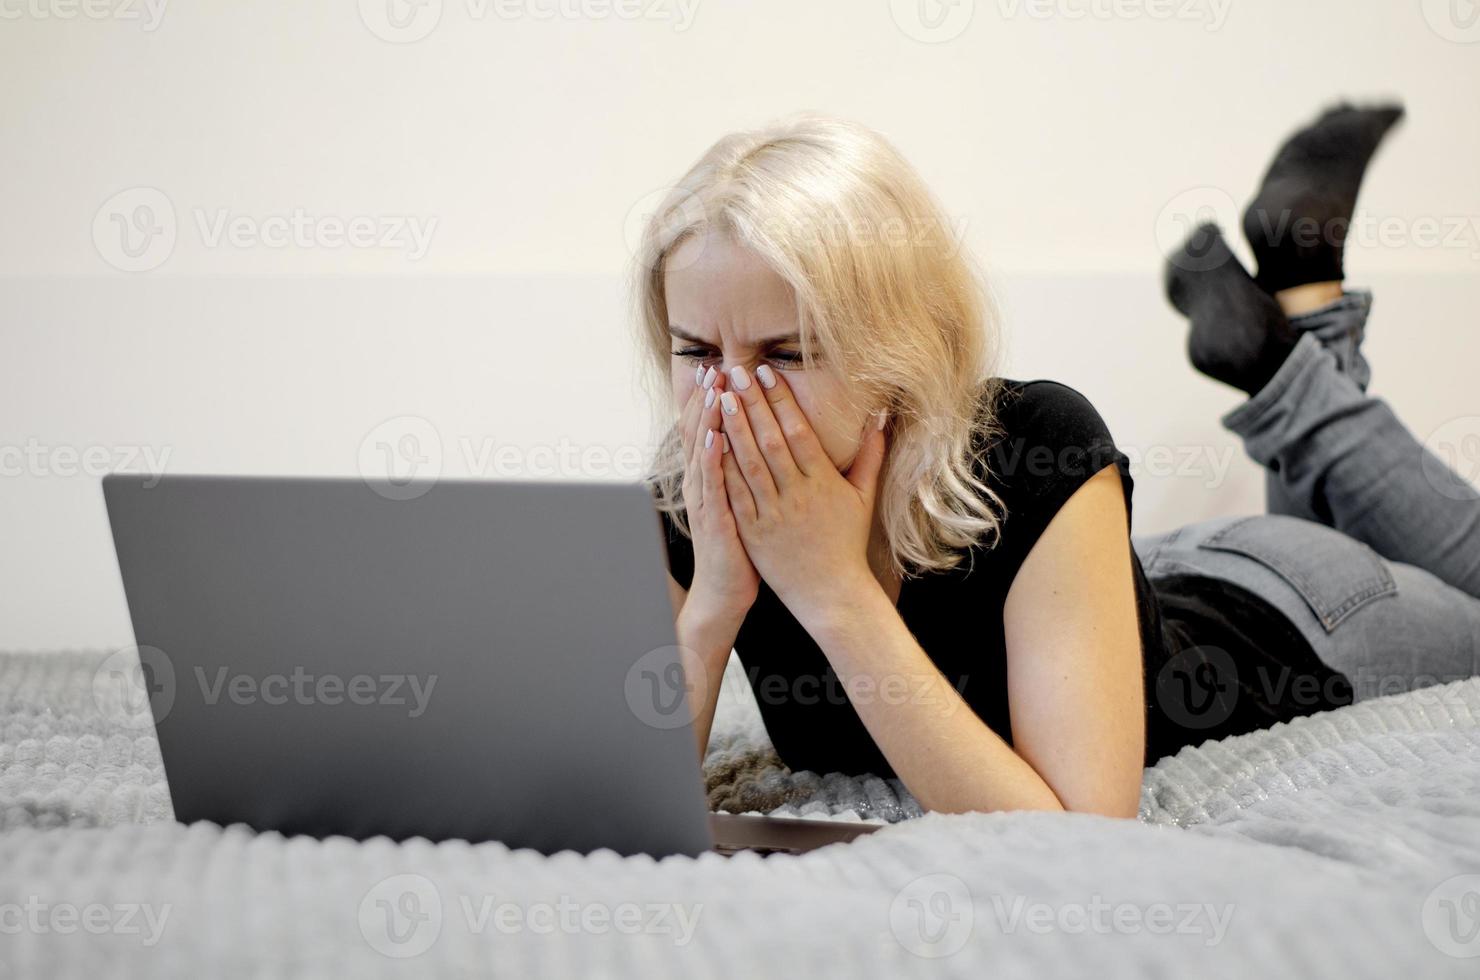 la niña está viendo una serie de televisión en una computadora portátil. foto